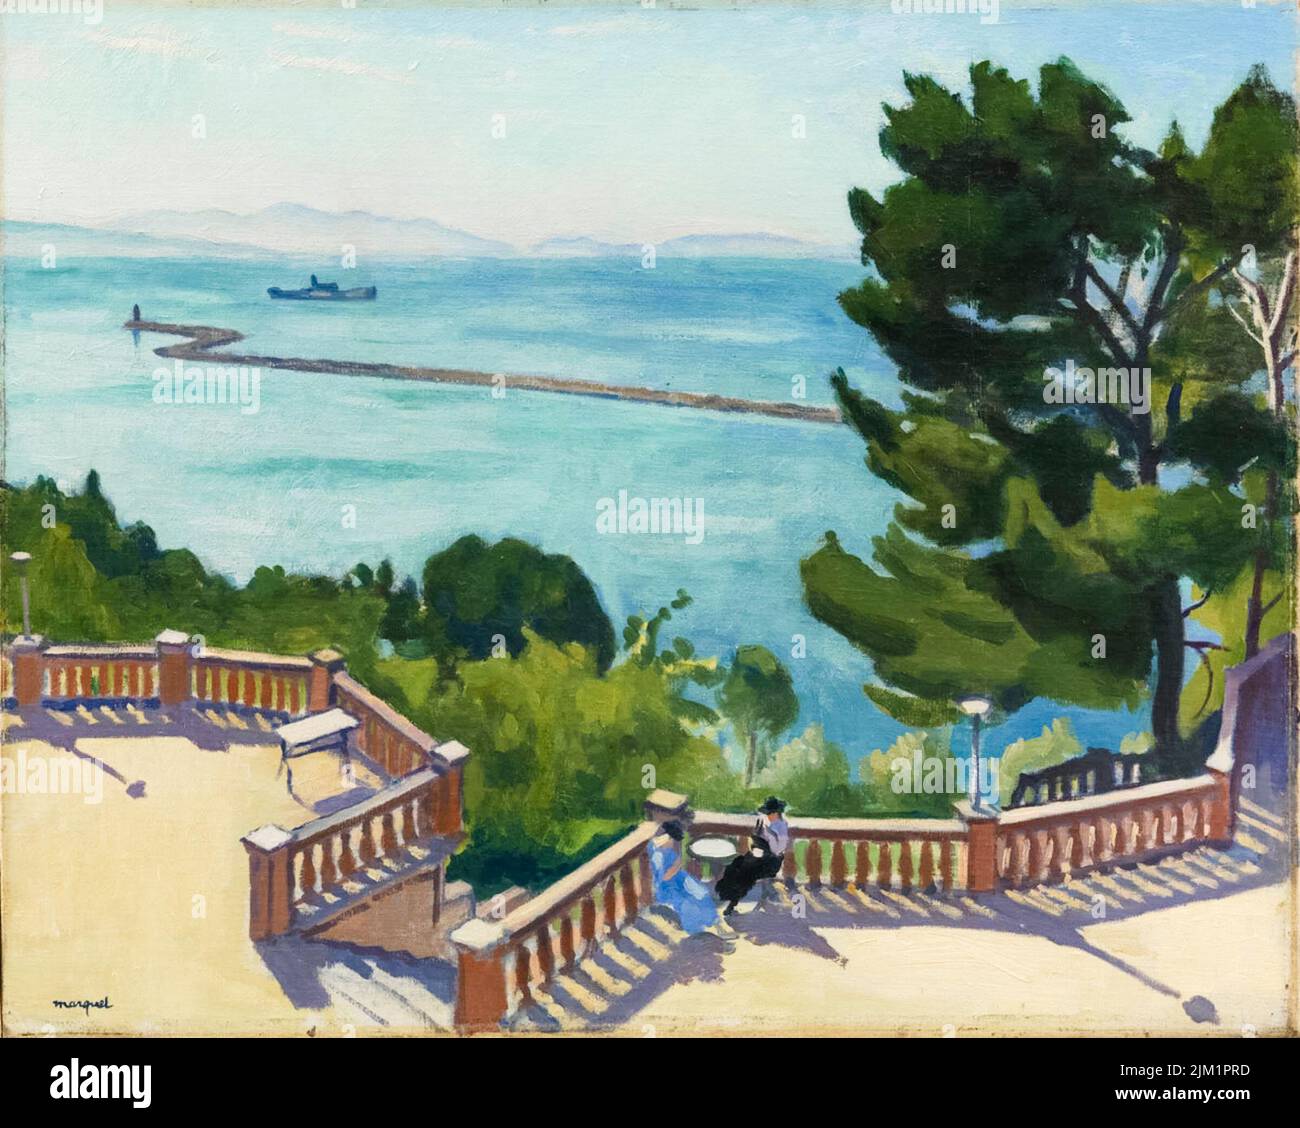 Albert Marquet, la terrasse de l'Estaque, peinture à l'huile sur toile, 1918 Banque D'Images